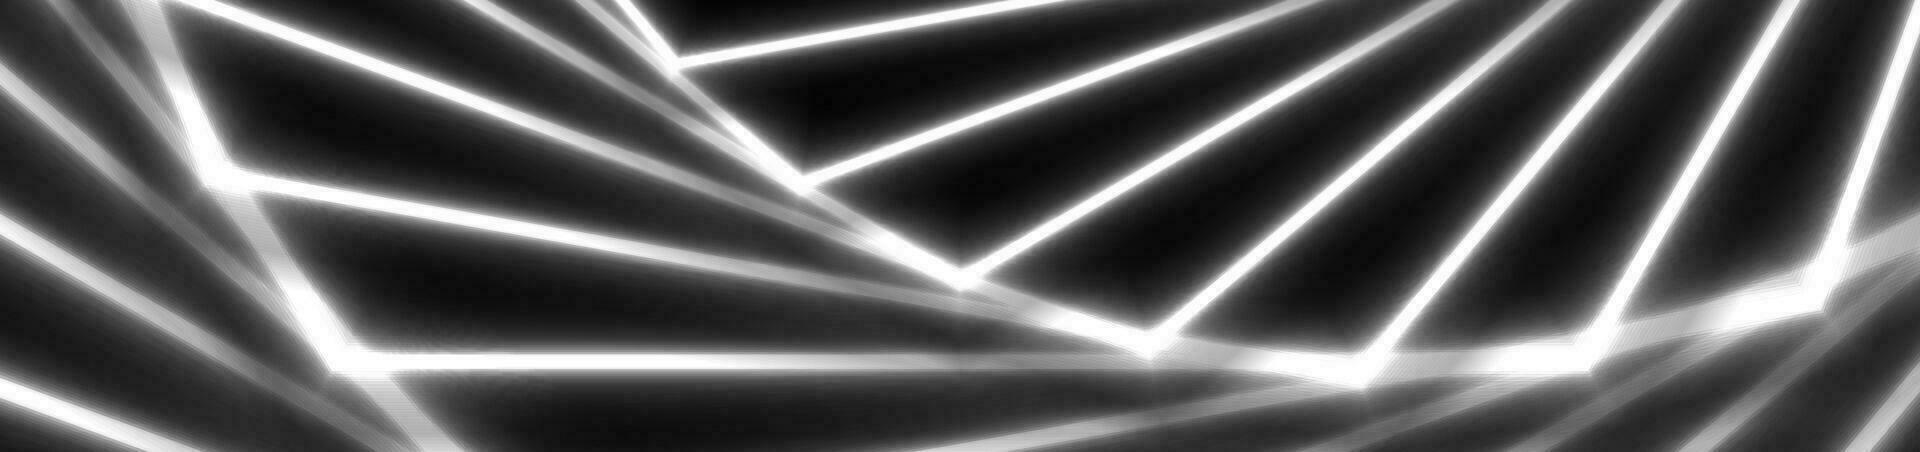 bianca laser Linee astratto hi-tech sfondo vettore